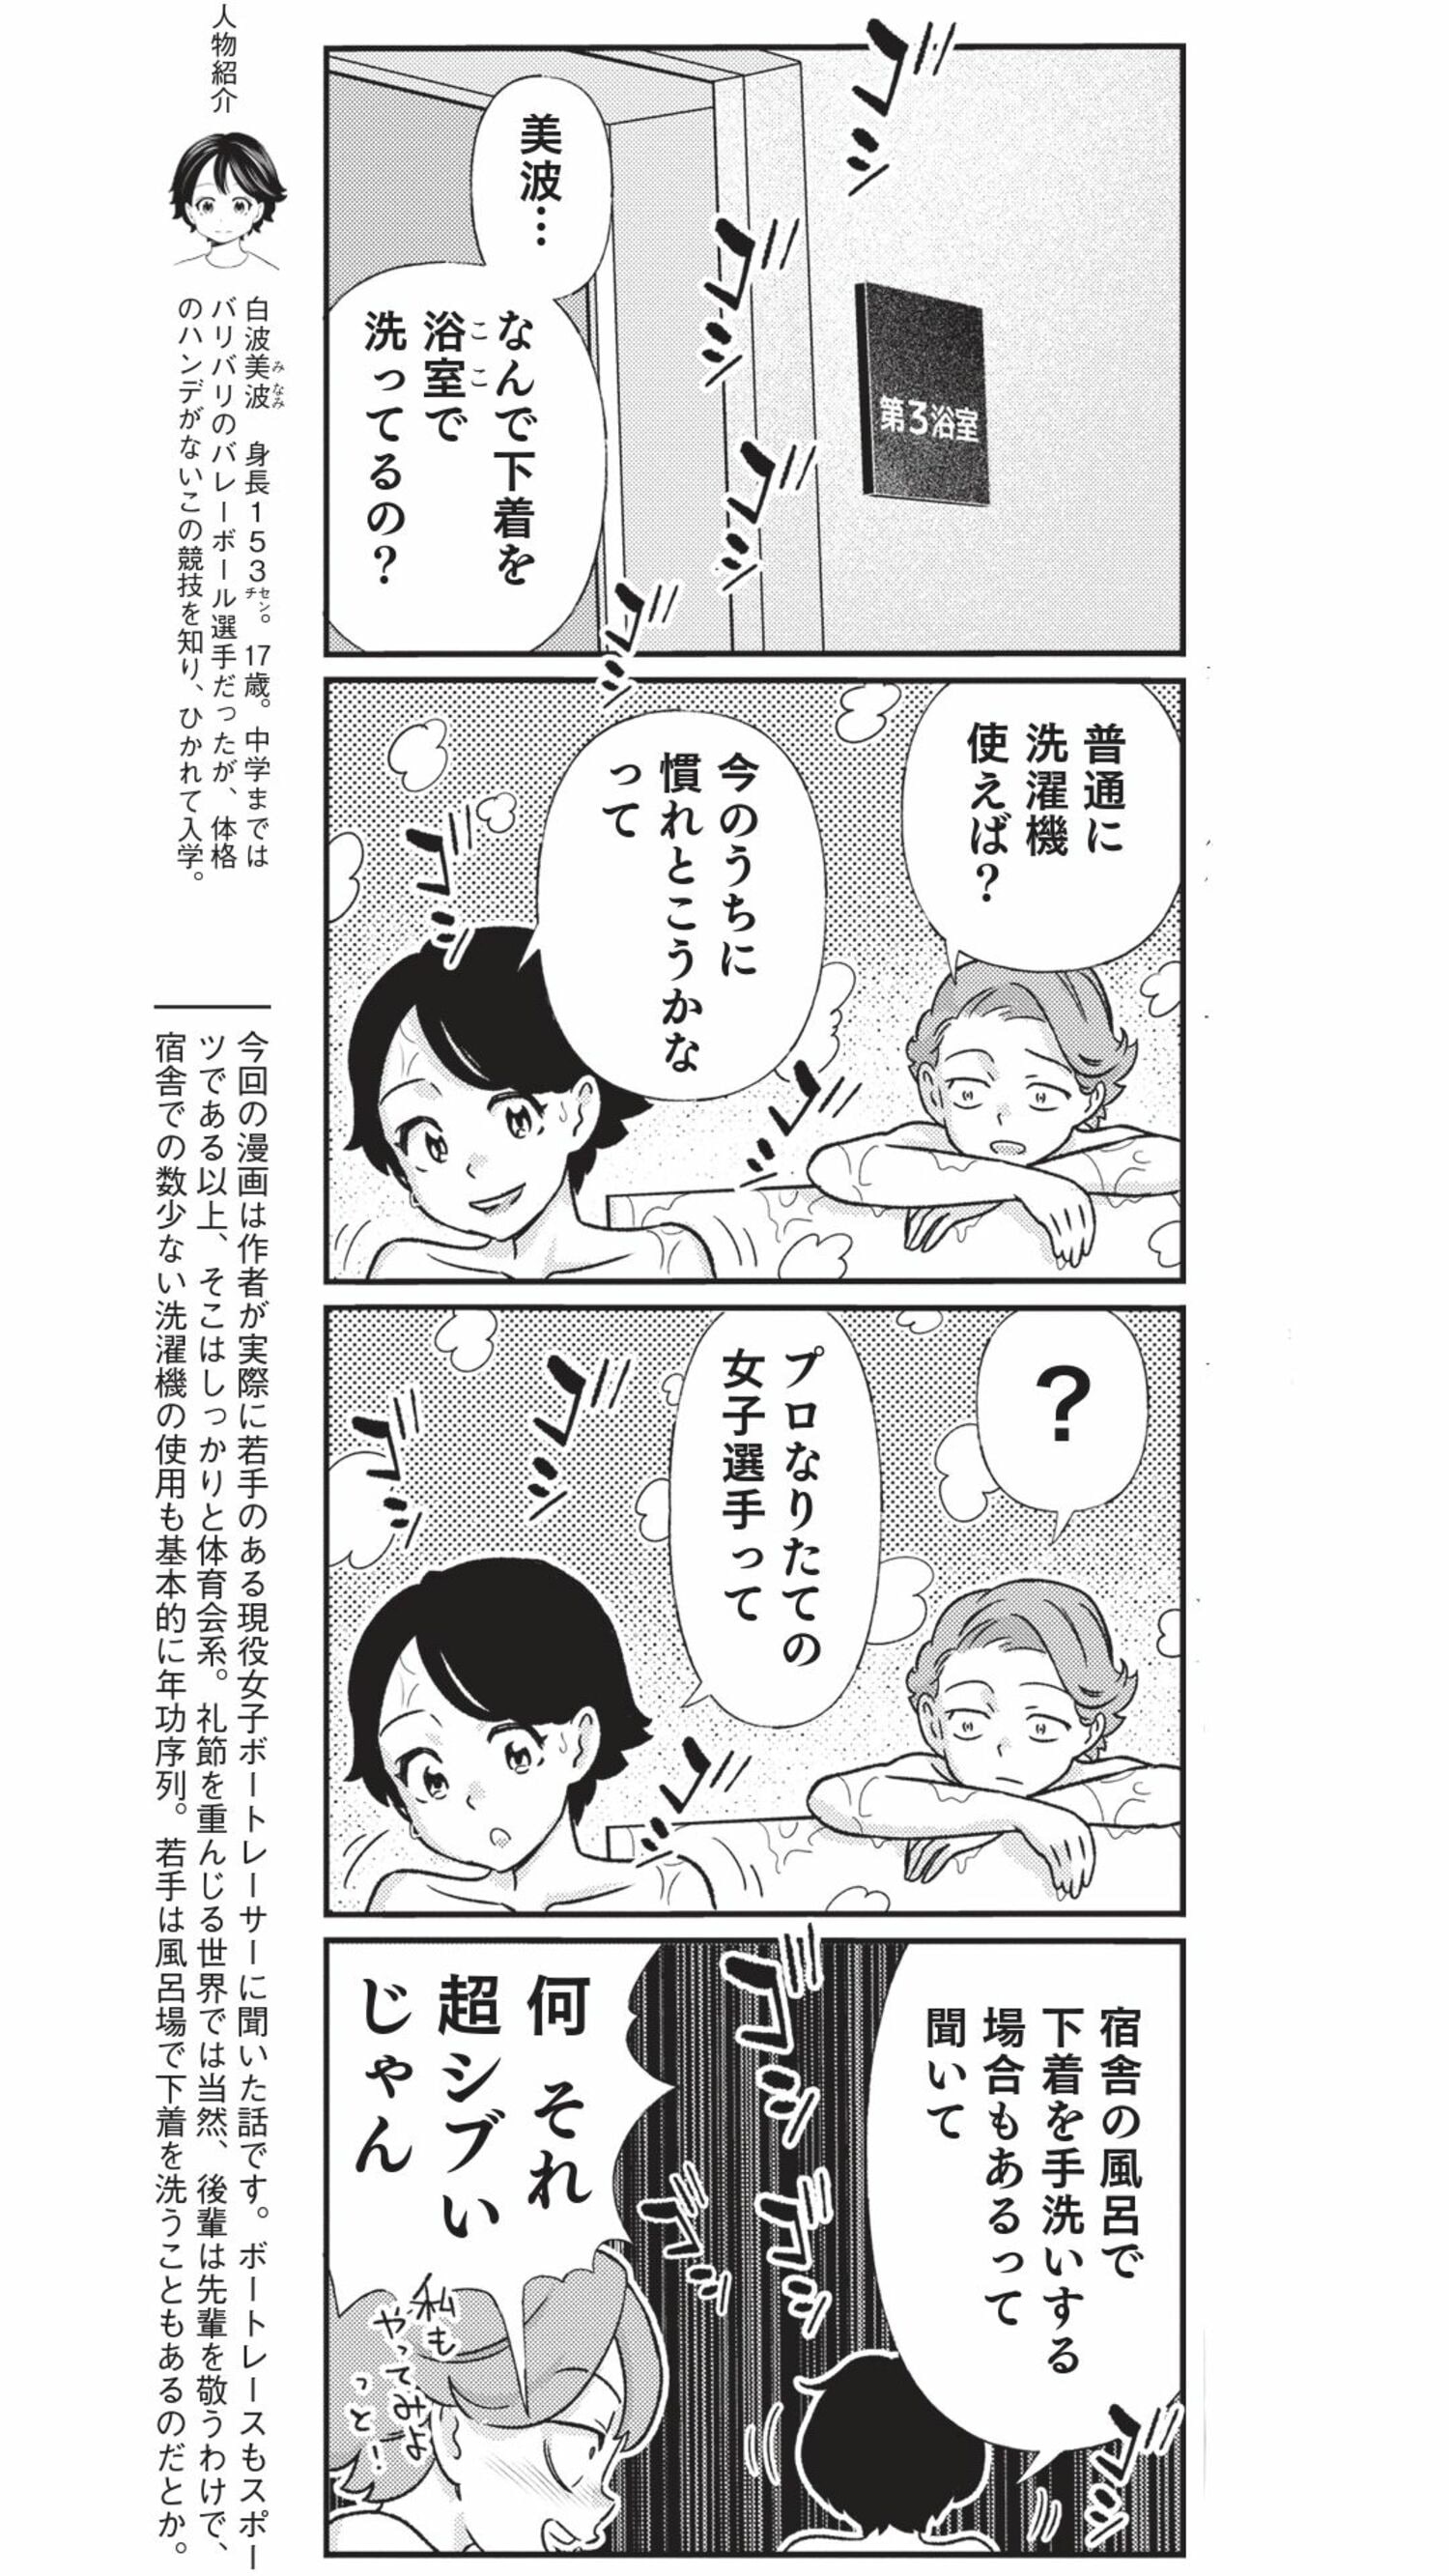 4コマ漫画『ボートレース訓練生・美波』こぼれ話「宿舎のお風呂で下着を洗濯」の画像